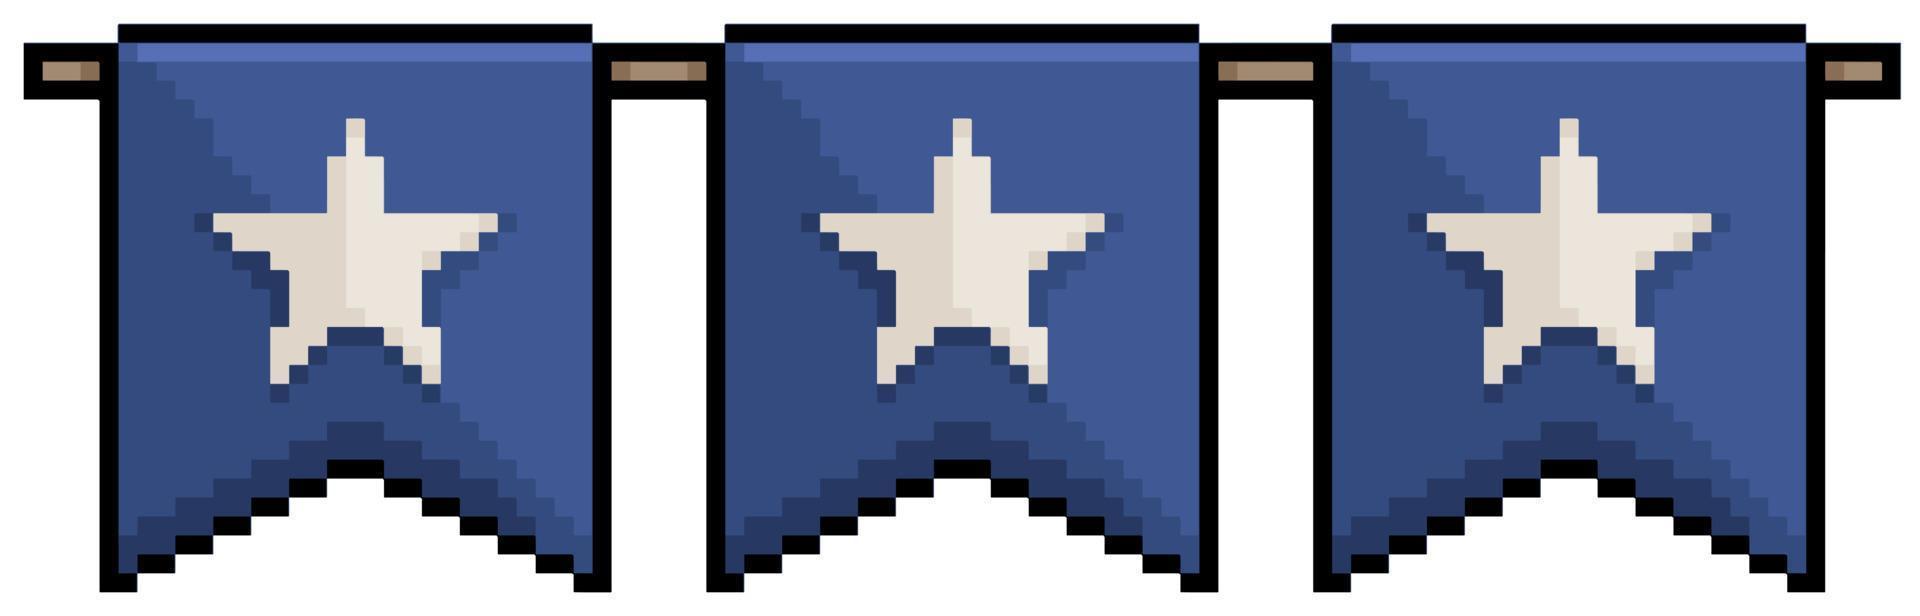 pixel art bandiere stendardo decorazione giorno dell'indipendenza degli stati uniti 4 luglio usa icona vettoriale per gioco a 8 bit su sfondo bianco